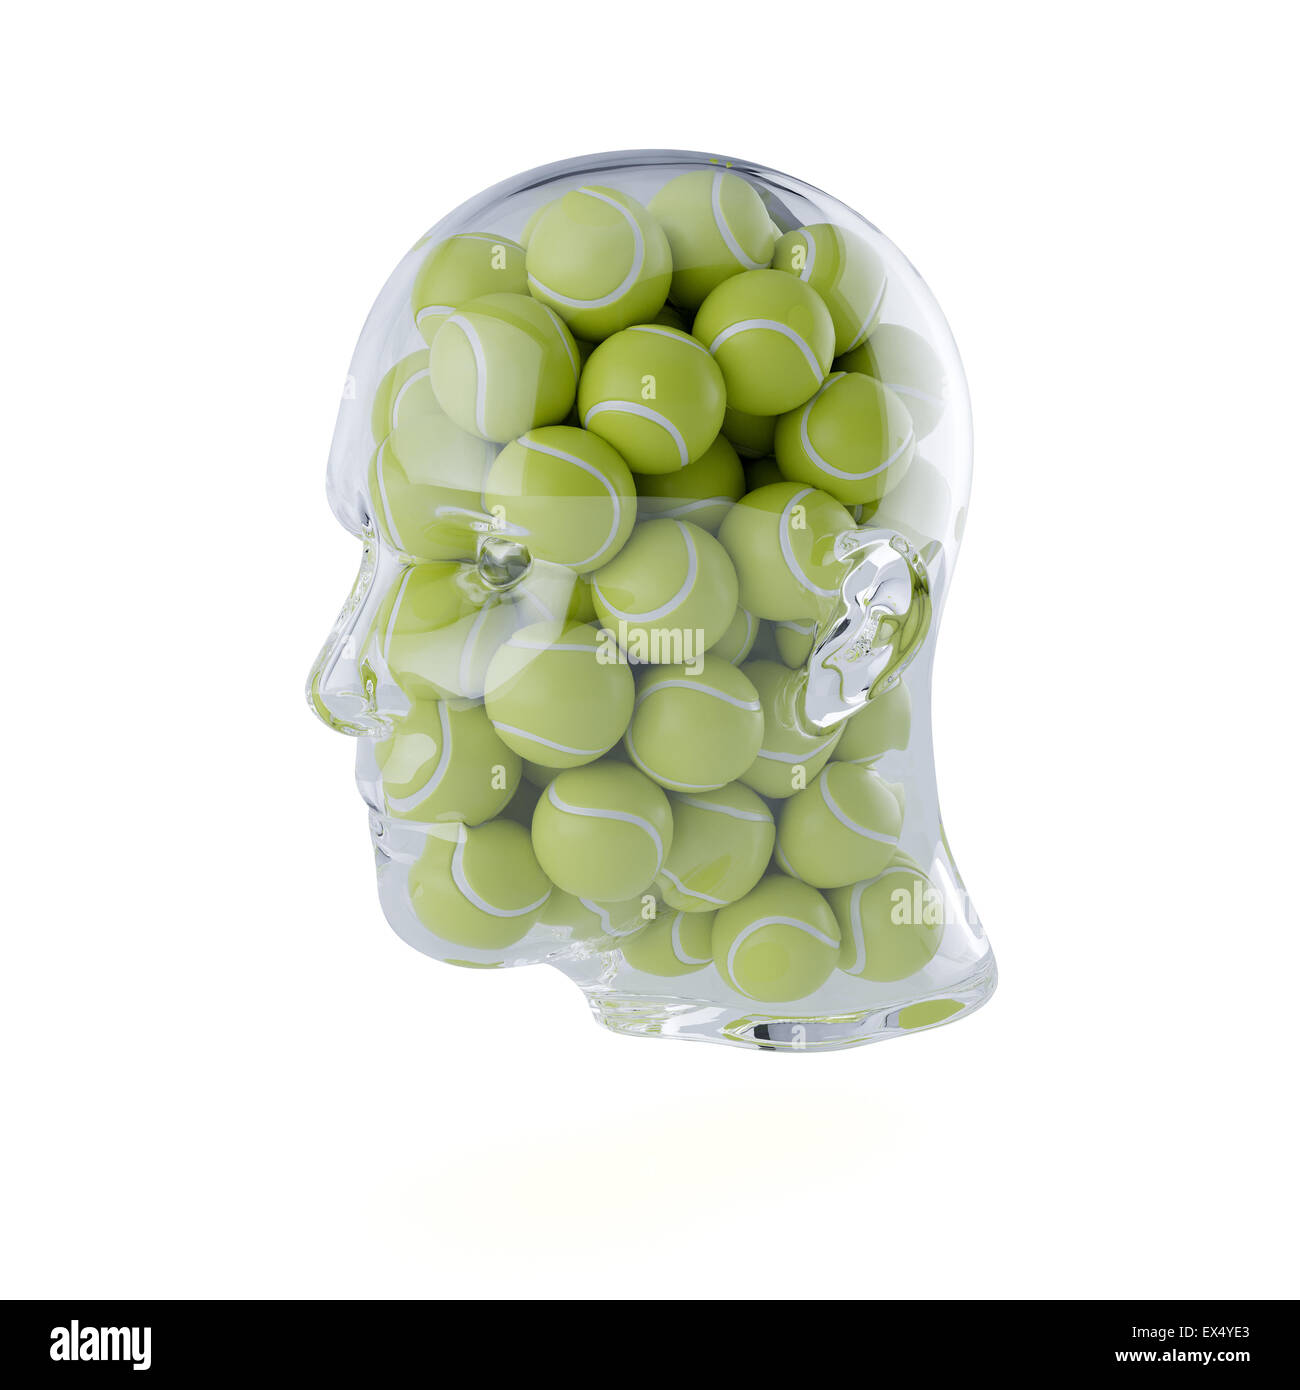 Le rendu 3D de verre transparent remplis de tête humaine des balles de tennis. Isolé sur fond blanc. Concept lecteur Banque D'Images